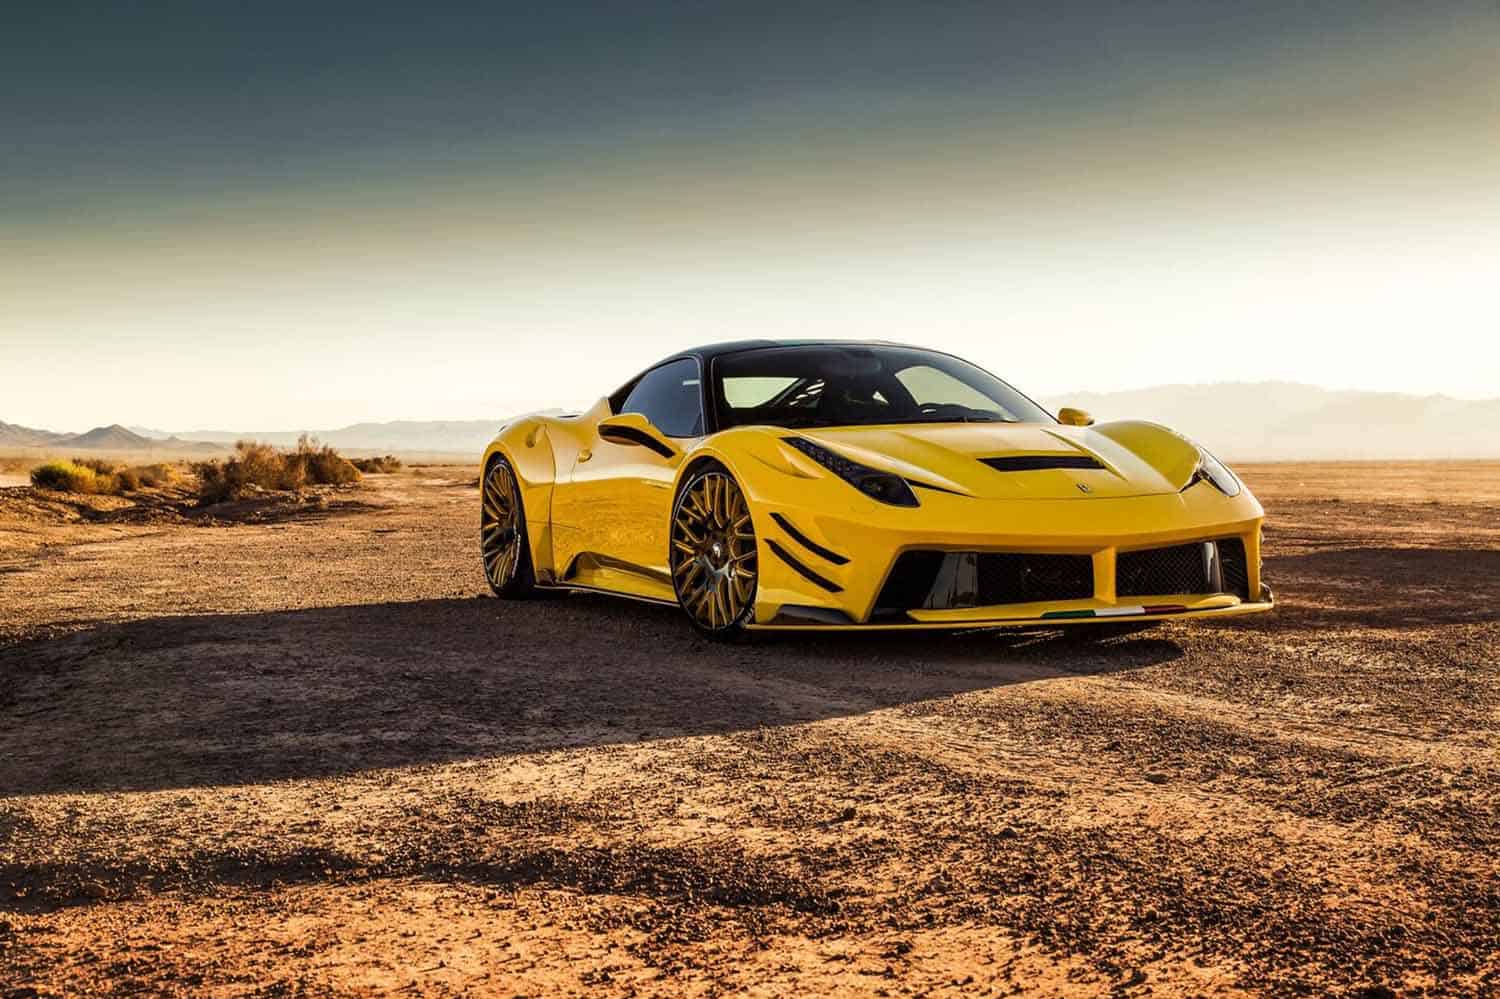 Creative Bespoke & PRIOR-DESIGN presentarón este monstruoso Ferrari 458 Italia Yellow Edition